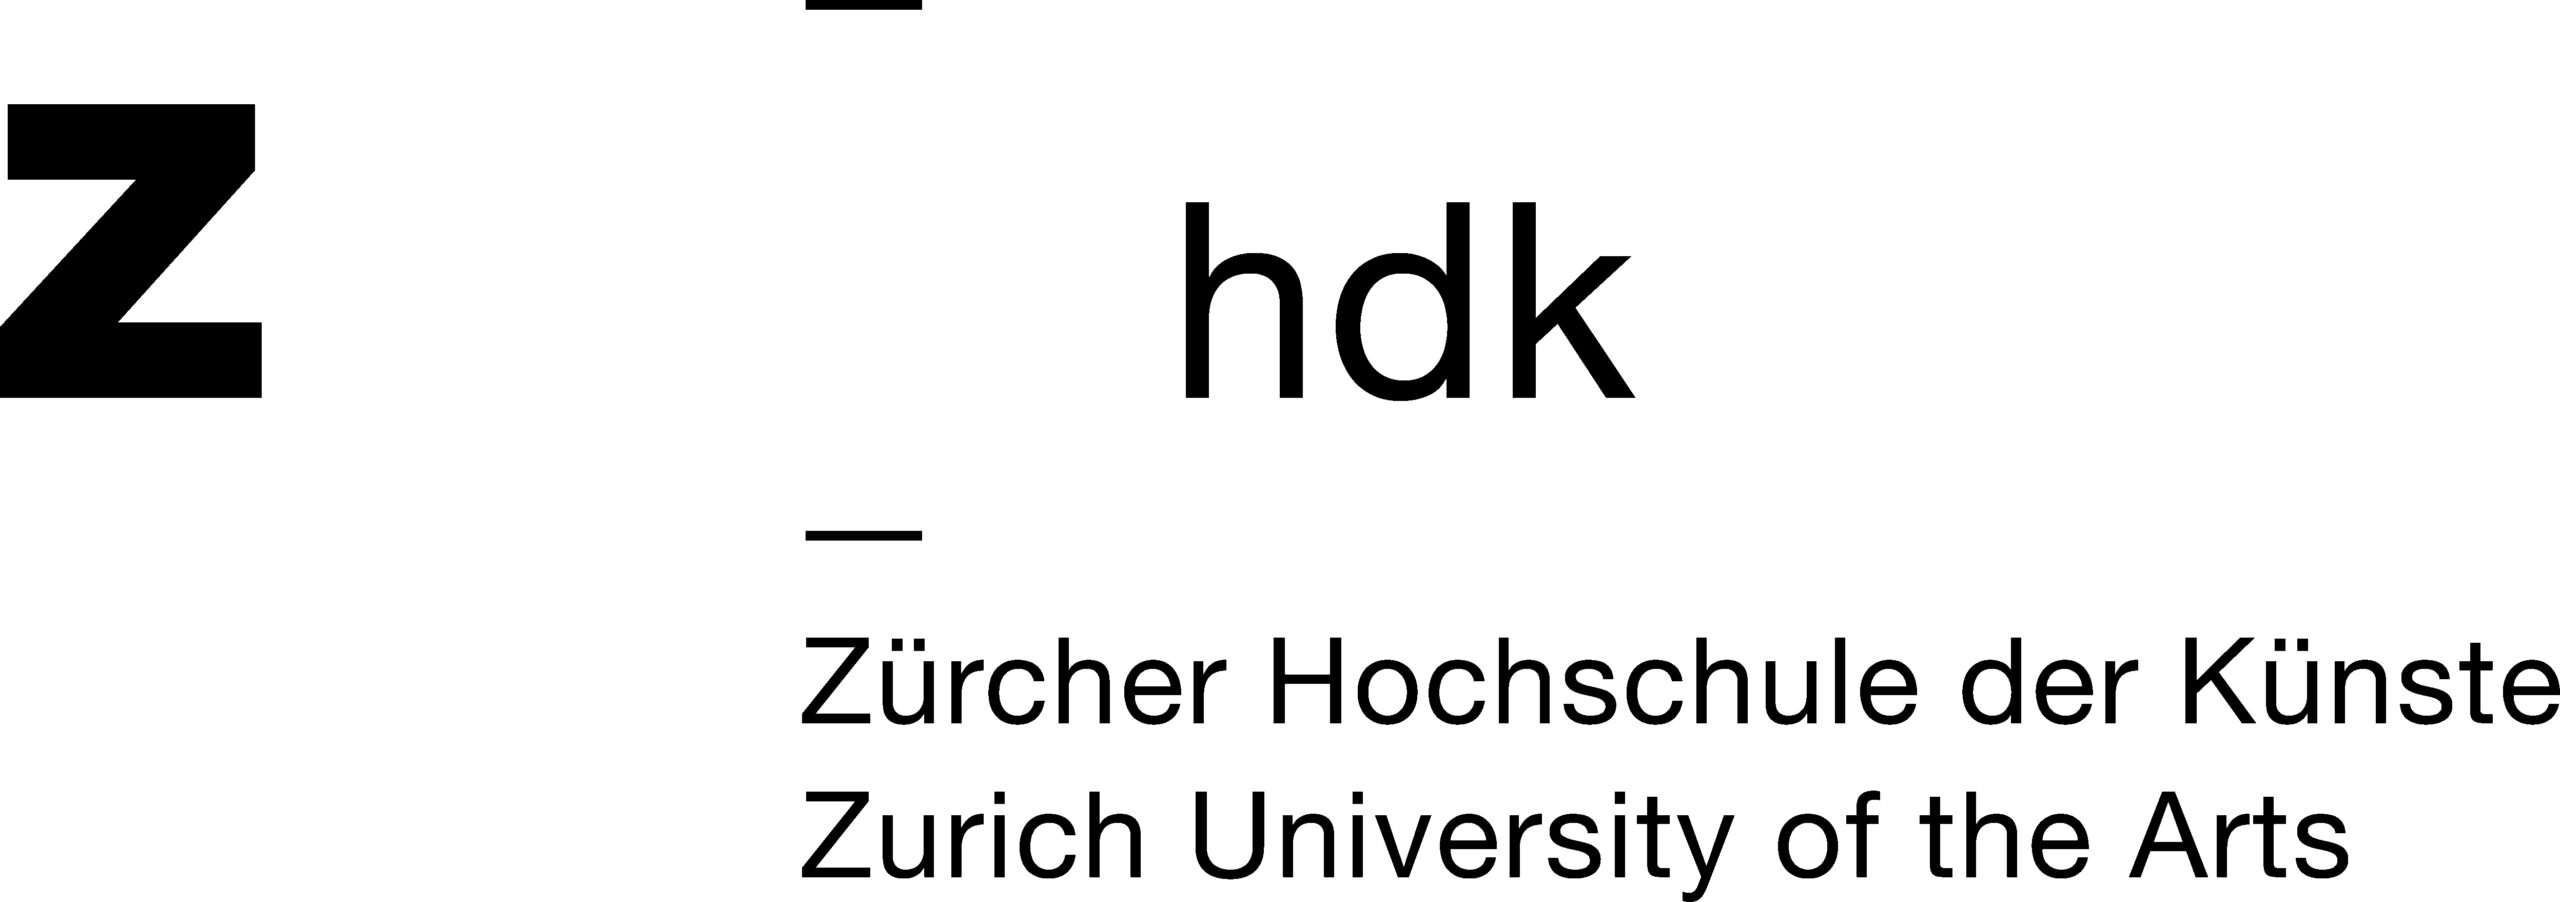 Zürcher Hochschule der Künste - Zurich University of the Arts